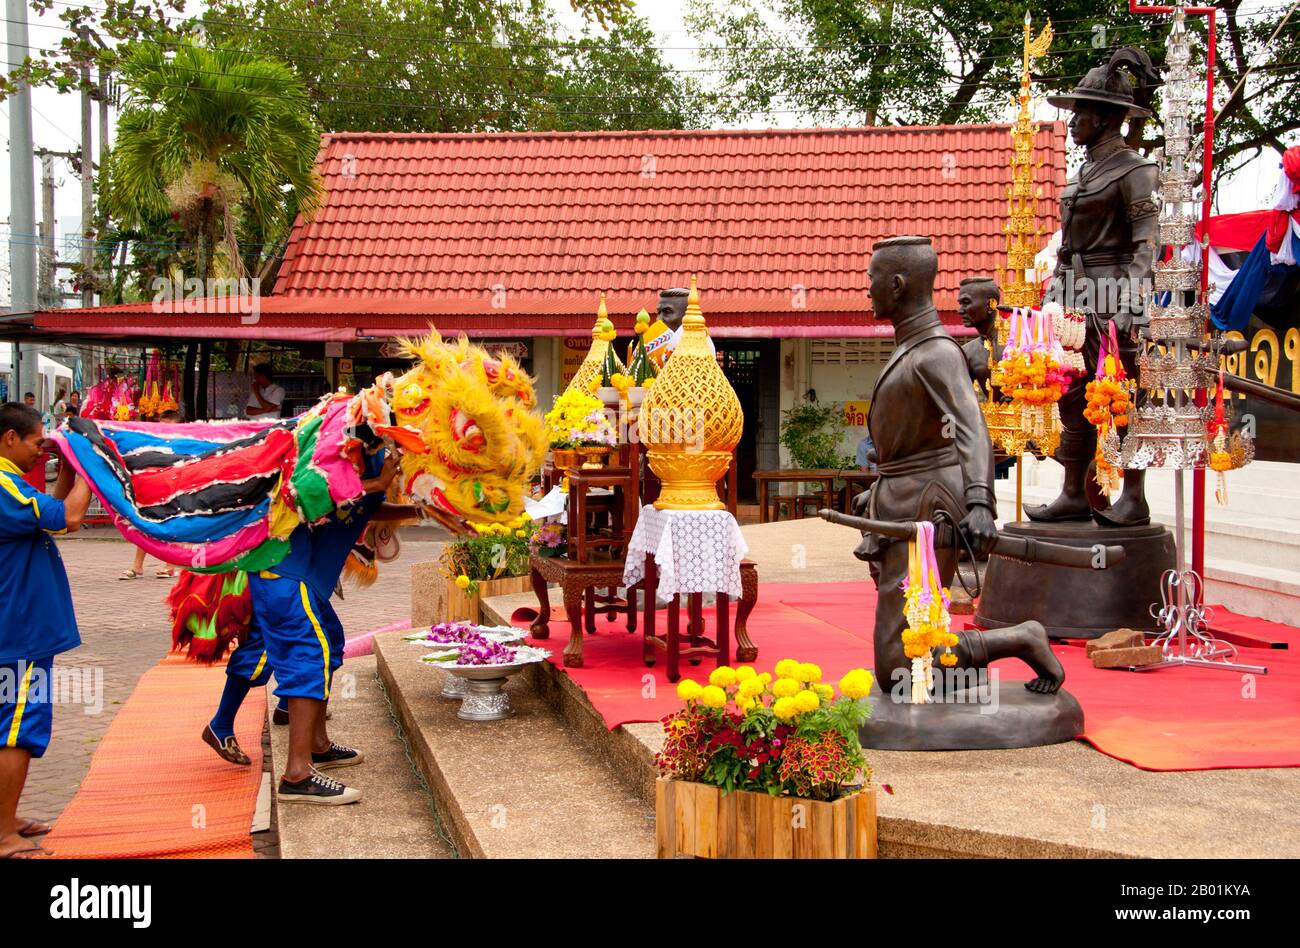 Thailandia: Una danza cinese del leone in onore di re Taksin, statua del re Taksin all'ingresso del parco di re Taksin, Chanthaburi, provincia di Chanthaburi. Chanthaburi è celebrato in tutta la Thailandia per i suoi eroici legami con re Taksin il grande, il conquistatore che combatté contro gli occupanti birmani di Ayutthaya nel 1767 e continuò a ristabilire l'indipendenza thailandese. Anche se Taksin governò solo brevemente dalla sua nuova capitale Thonburi (r. 1768-1782), il suo nome rimane molto venerato, ed è commemorato attraverso Chanthaburi in una serie di santuari, monumenti, parchi e persino un cantiere navale. Foto Stock